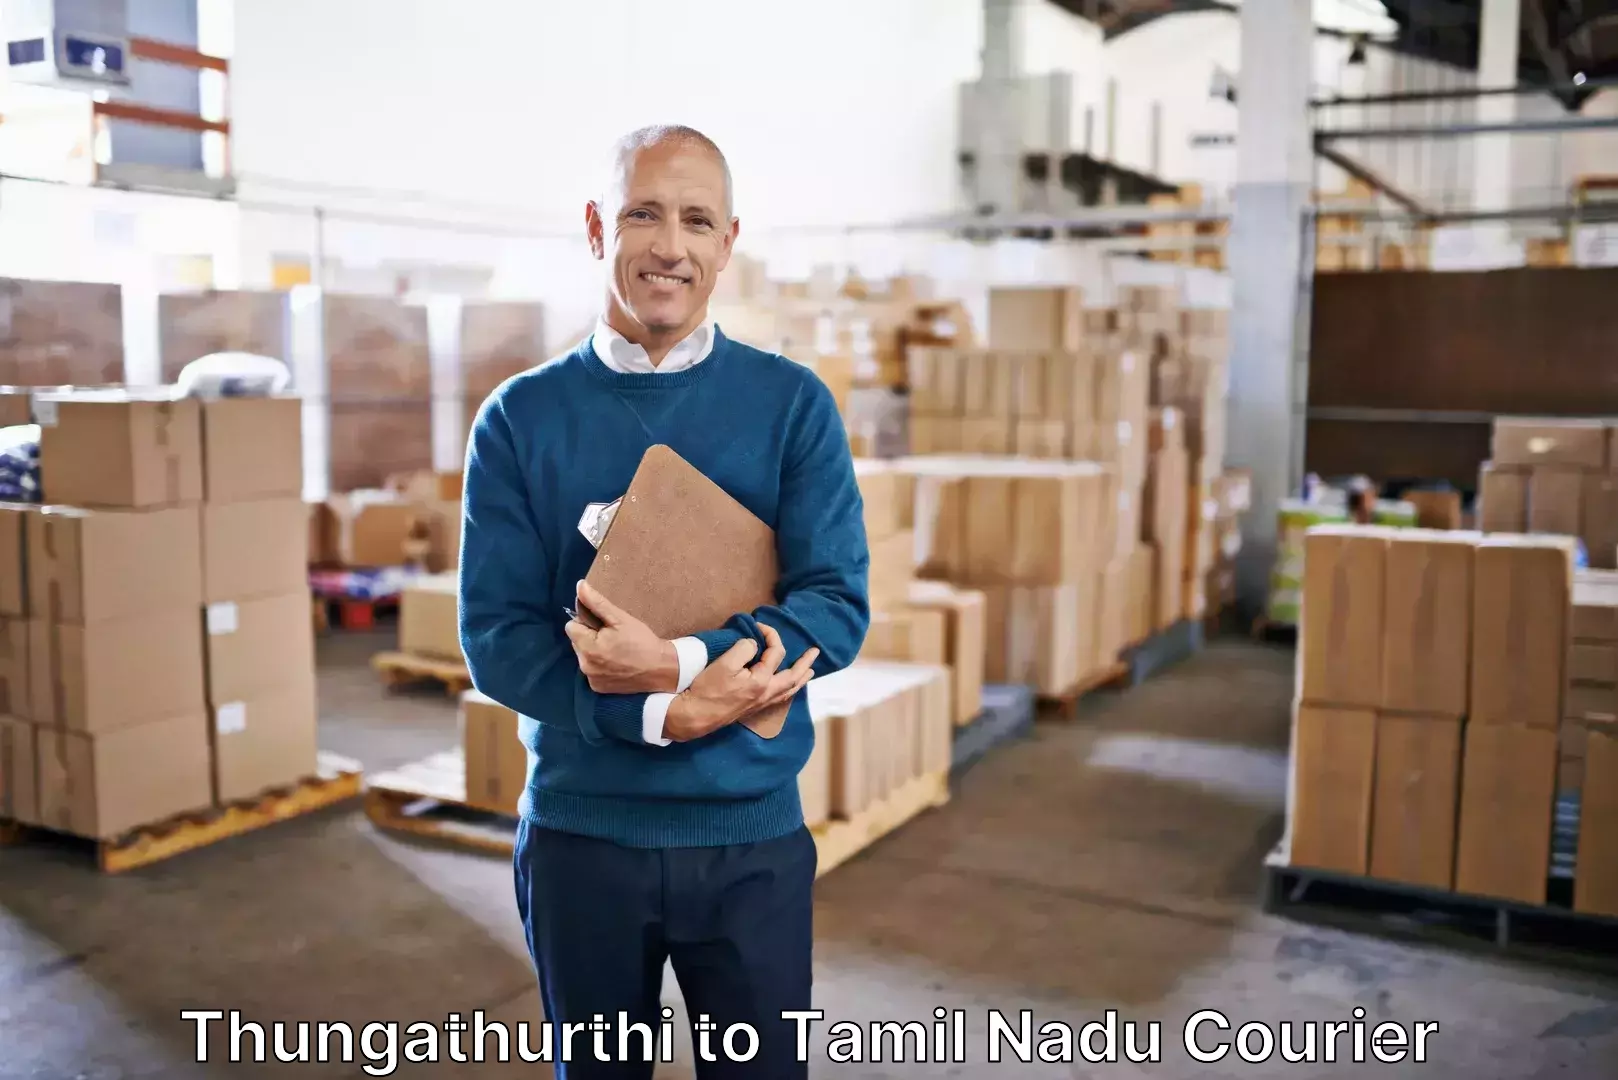 Personalized luggage shipping Thungathurthi to Tamil Nadu